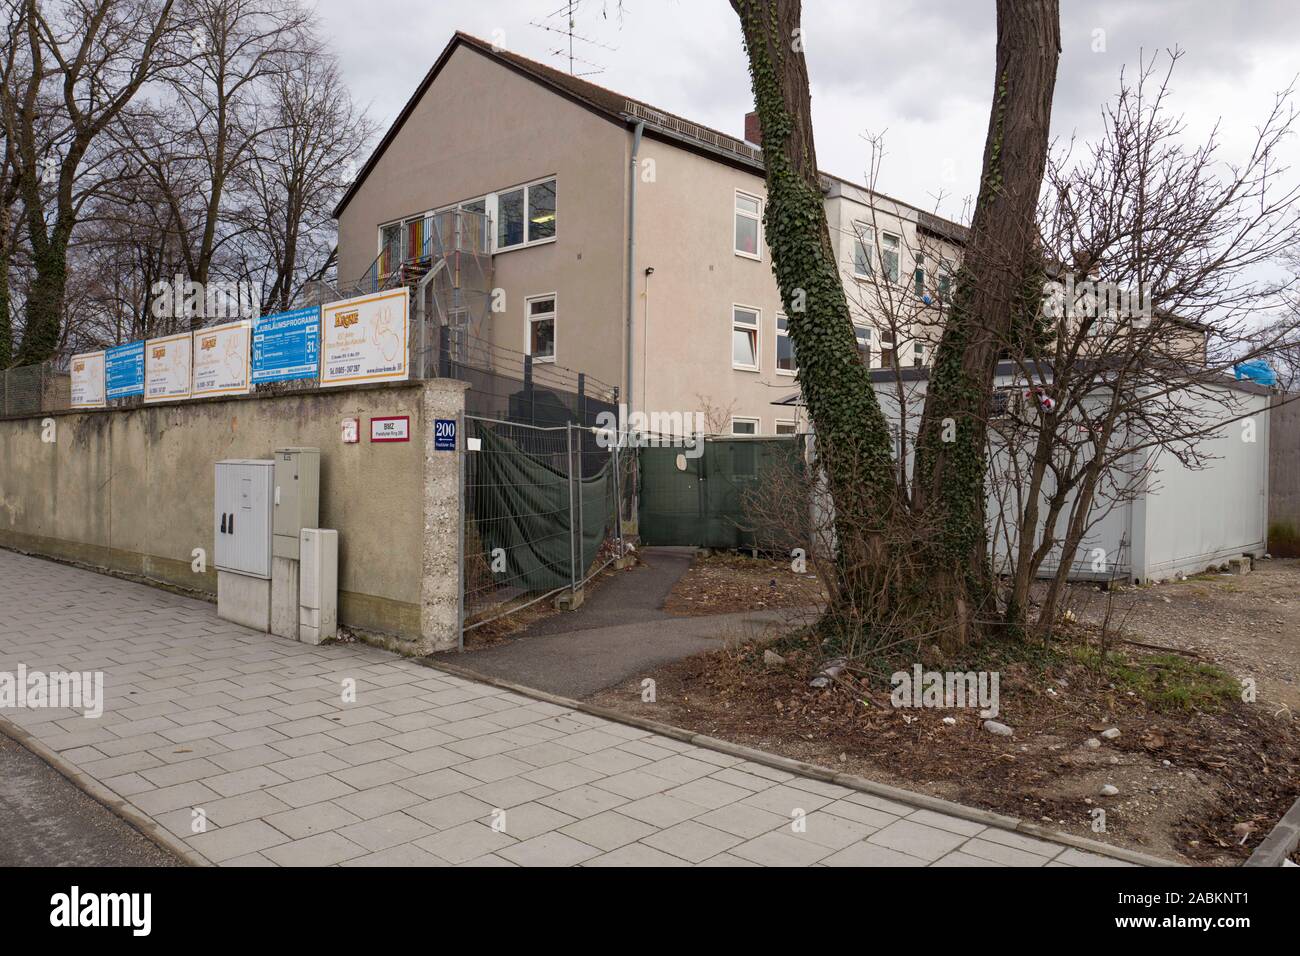 Der ehemalige radio Kasernen auf dem Frankfurter Ring haben sich  mittlerweile zu einem Anker Zentrum für Flüchtlinge umgewandelt worden.  [Automatisierte Übersetzung] Stockfotografie - Alamy